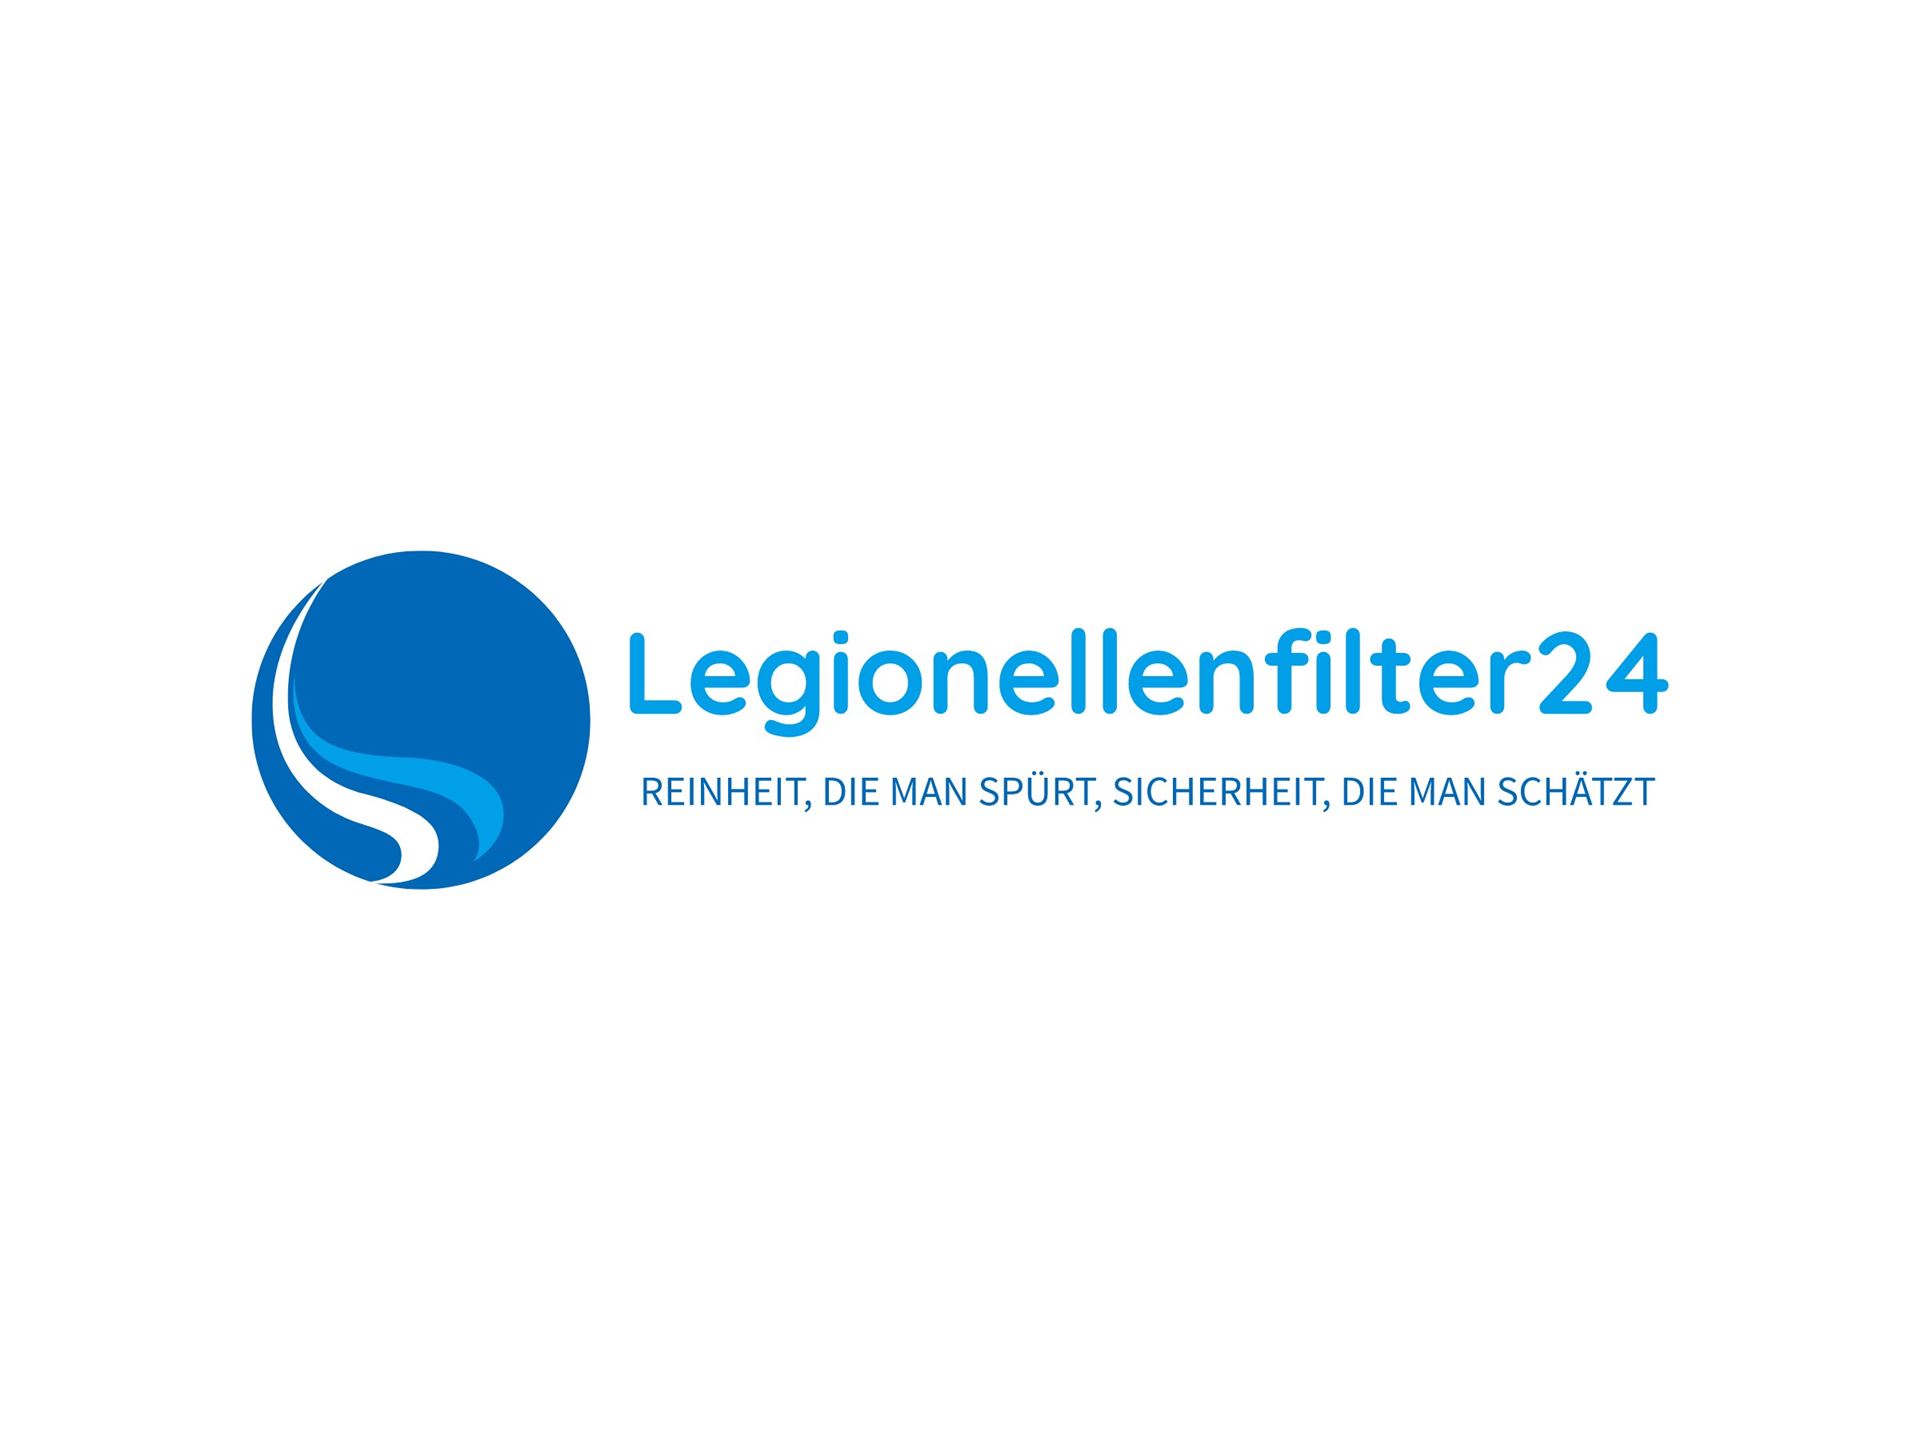 Legionellenfilter24 